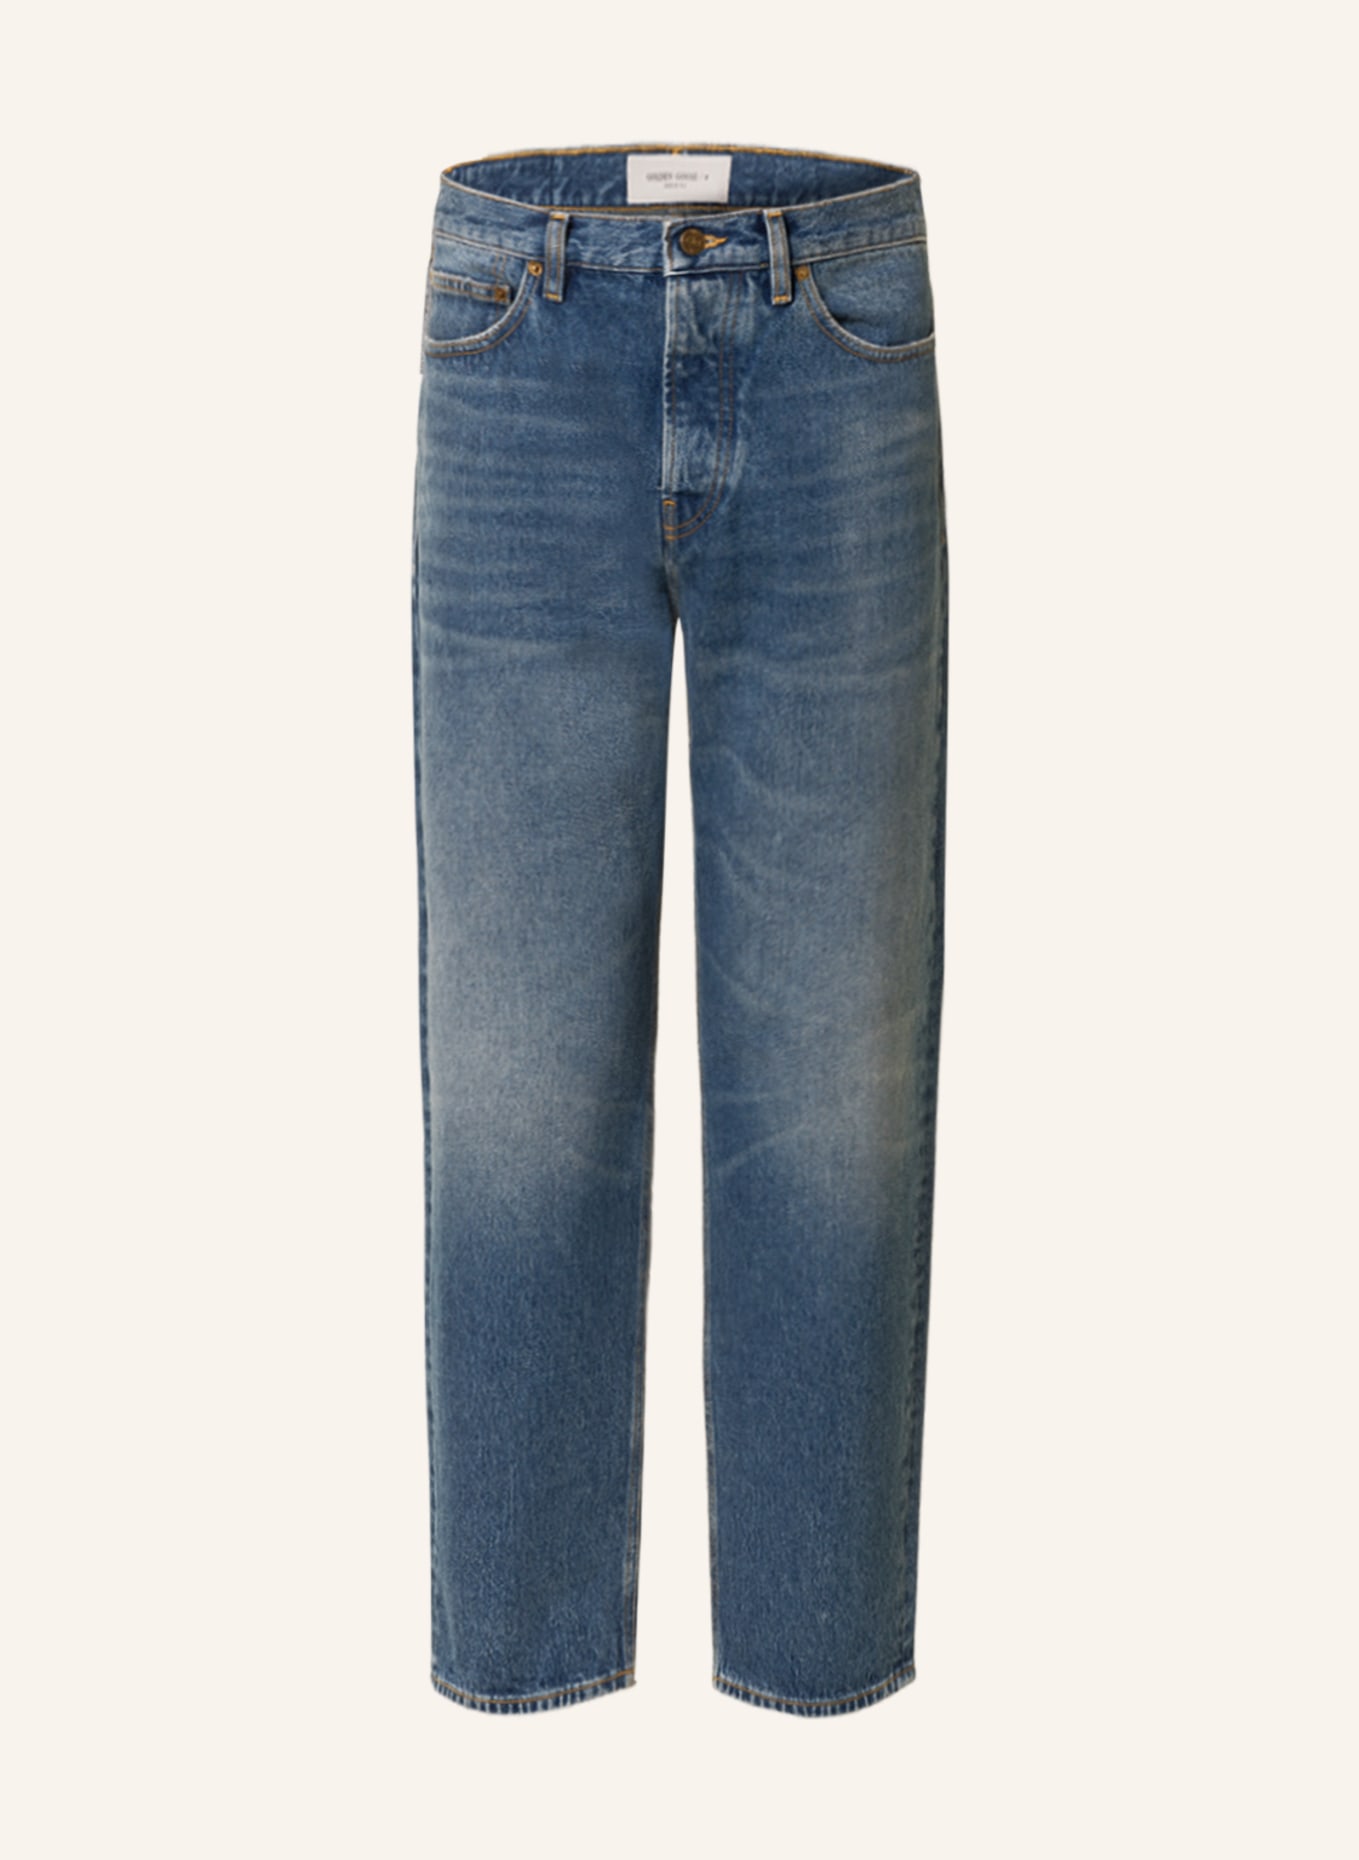 GOLDEN GOOSE Jeans Regular Fit, Farbe: 50100 BLUE (Bild 1)